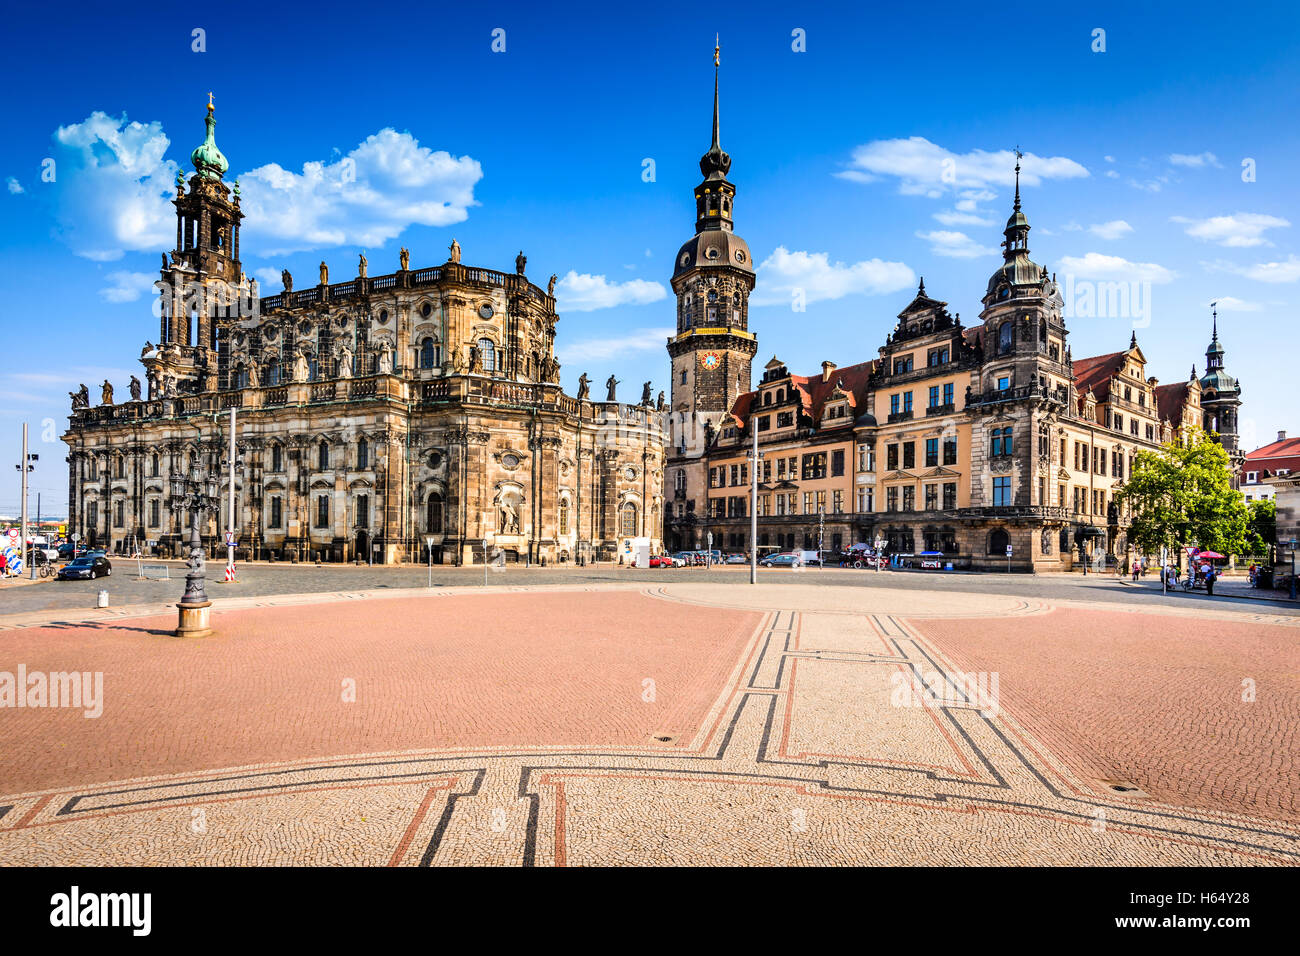 Dresden, Deutschland. Dresda Burg (Grünes Gewölbe) im historischen Zentrum der sächsischen Stadt. Enthält die größte Sammlung von trea Stockfoto